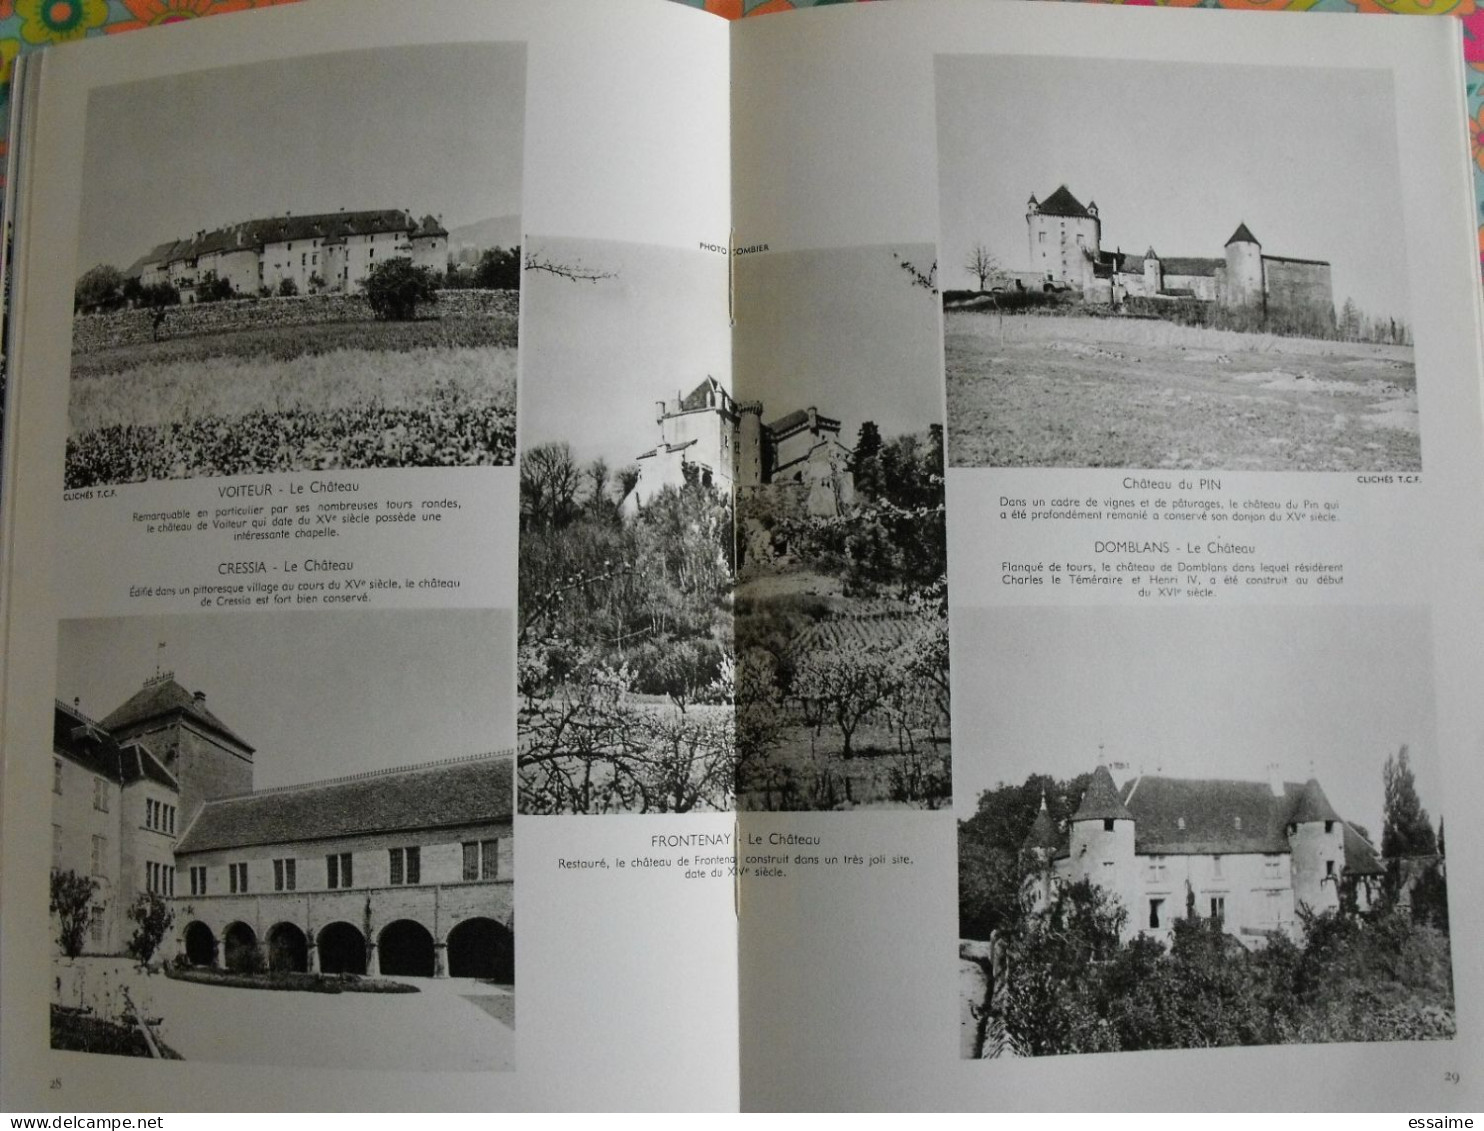 La France à table n° 128. 1967. Jura. chateau-chalon nevy rousse saint-claude  salins dole arbois poligny. gastronomie